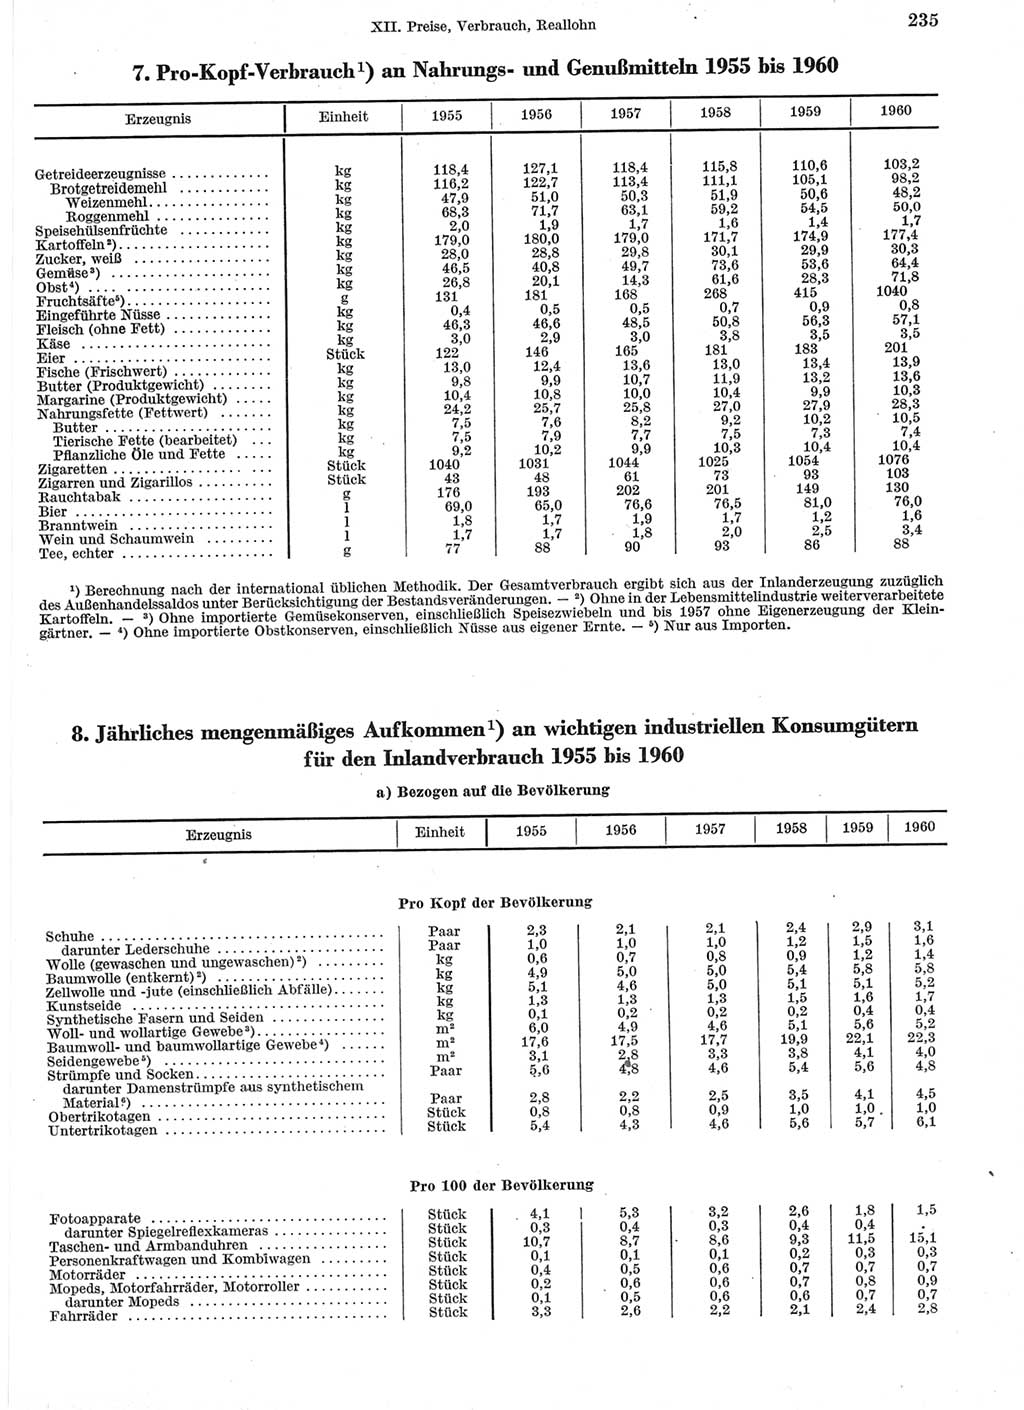 Statistisches Jahrbuch der Deutschen Demokratischen Republik (DDR) 1960-1961, Seite 235 (Stat. Jb. DDR 1960-1961, S. 235)